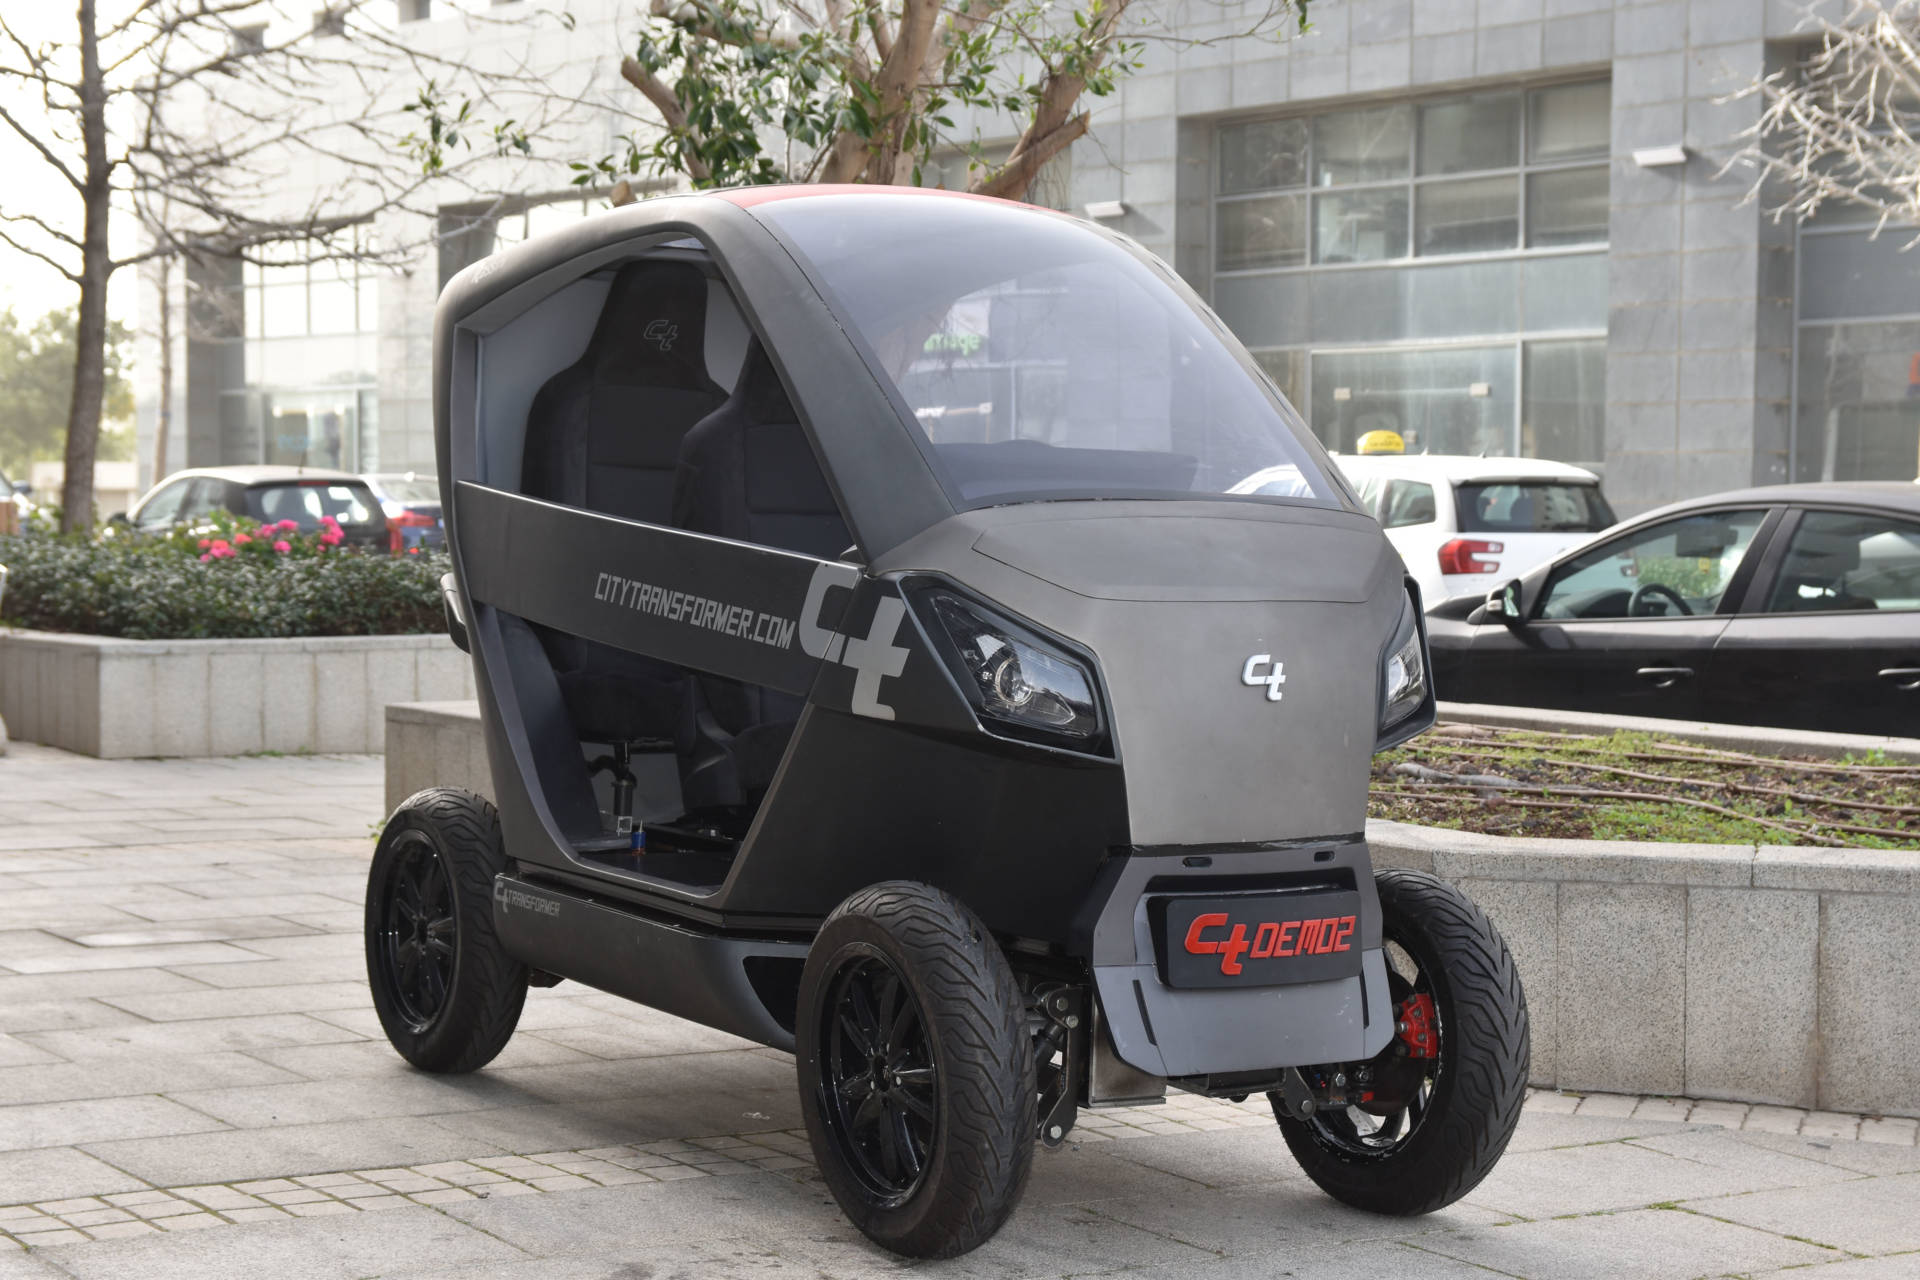 Modell Faltbares schwarzes E-Auto "City Transformer"